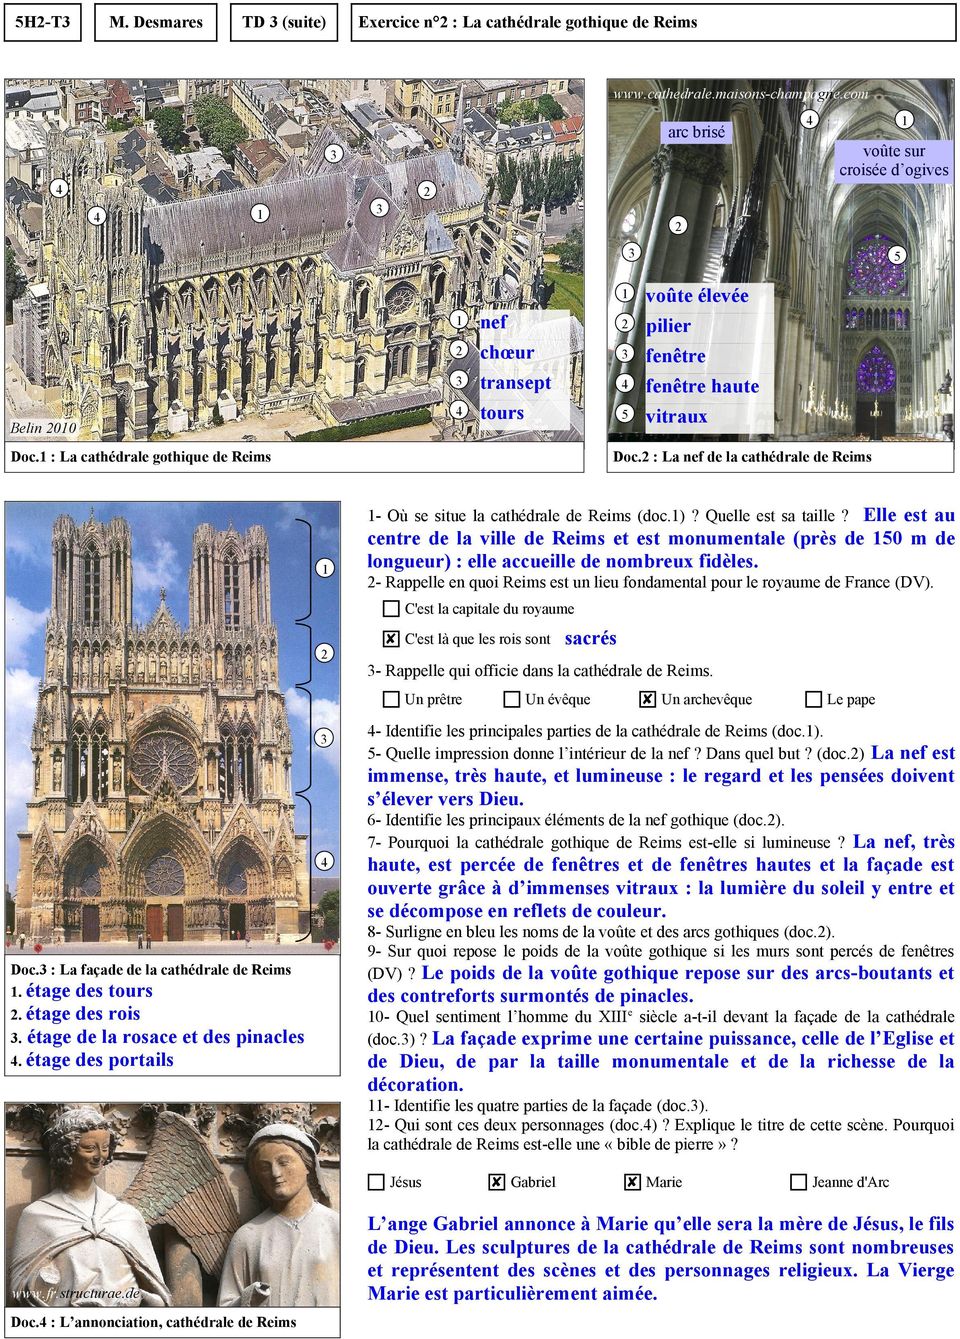 : La nef de la cathédrale de Reims Elle est au centre de la ville de Reims et est monumentale (près de 0 m de longueur) : elle accueille de nombreux fidèles. - Où se situe la cathédrale de Reims (doc.